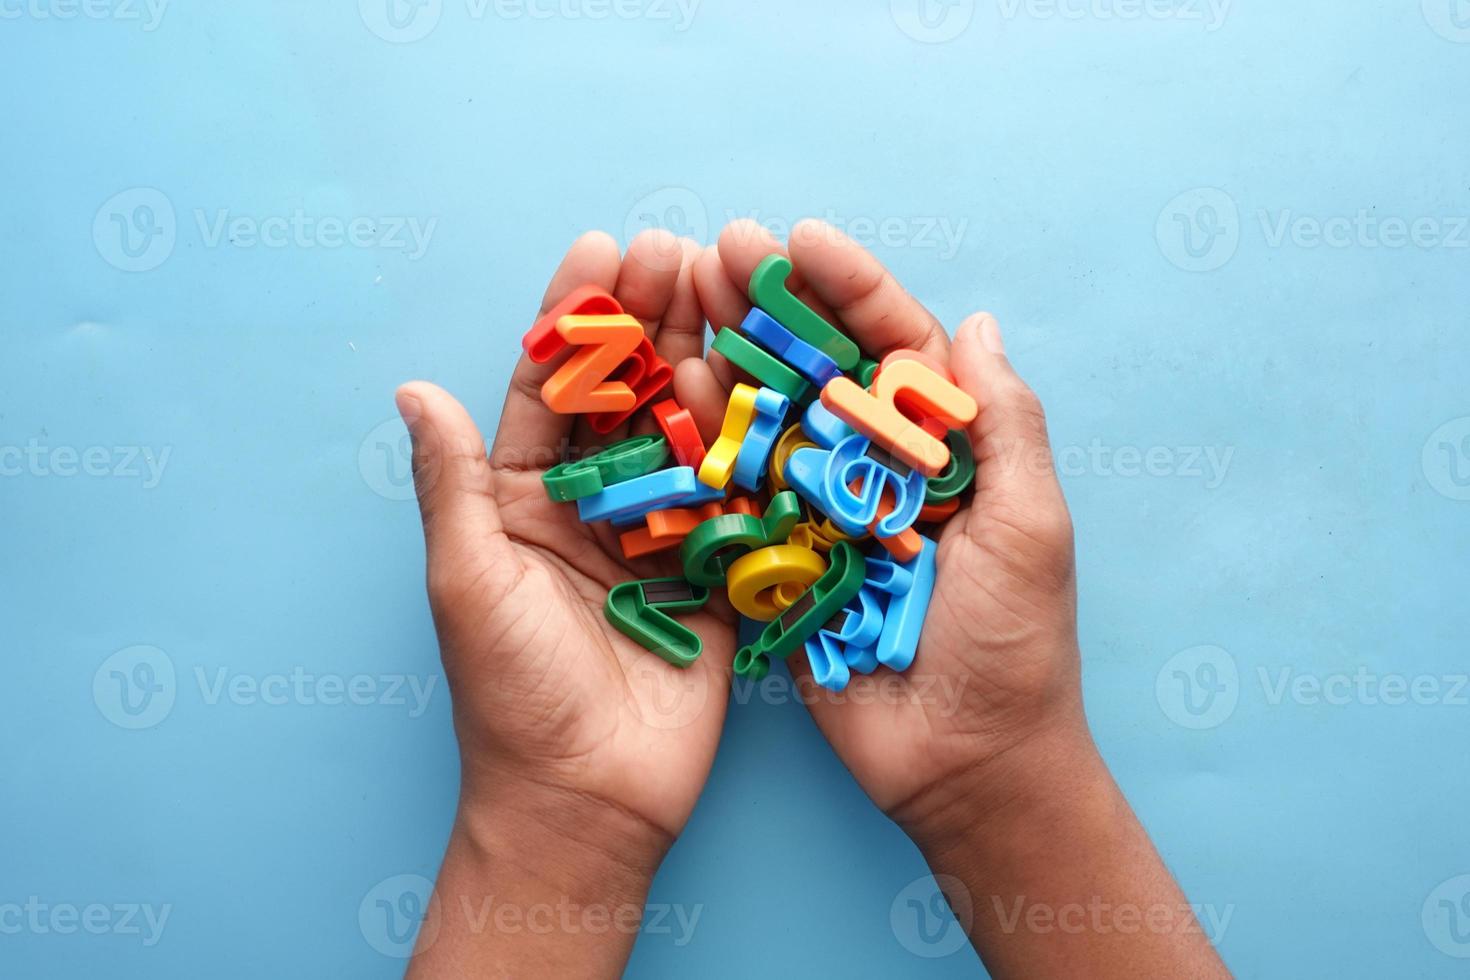 kleurrijke plastic letters op de hand van het kind op blauwe achtergrond foto